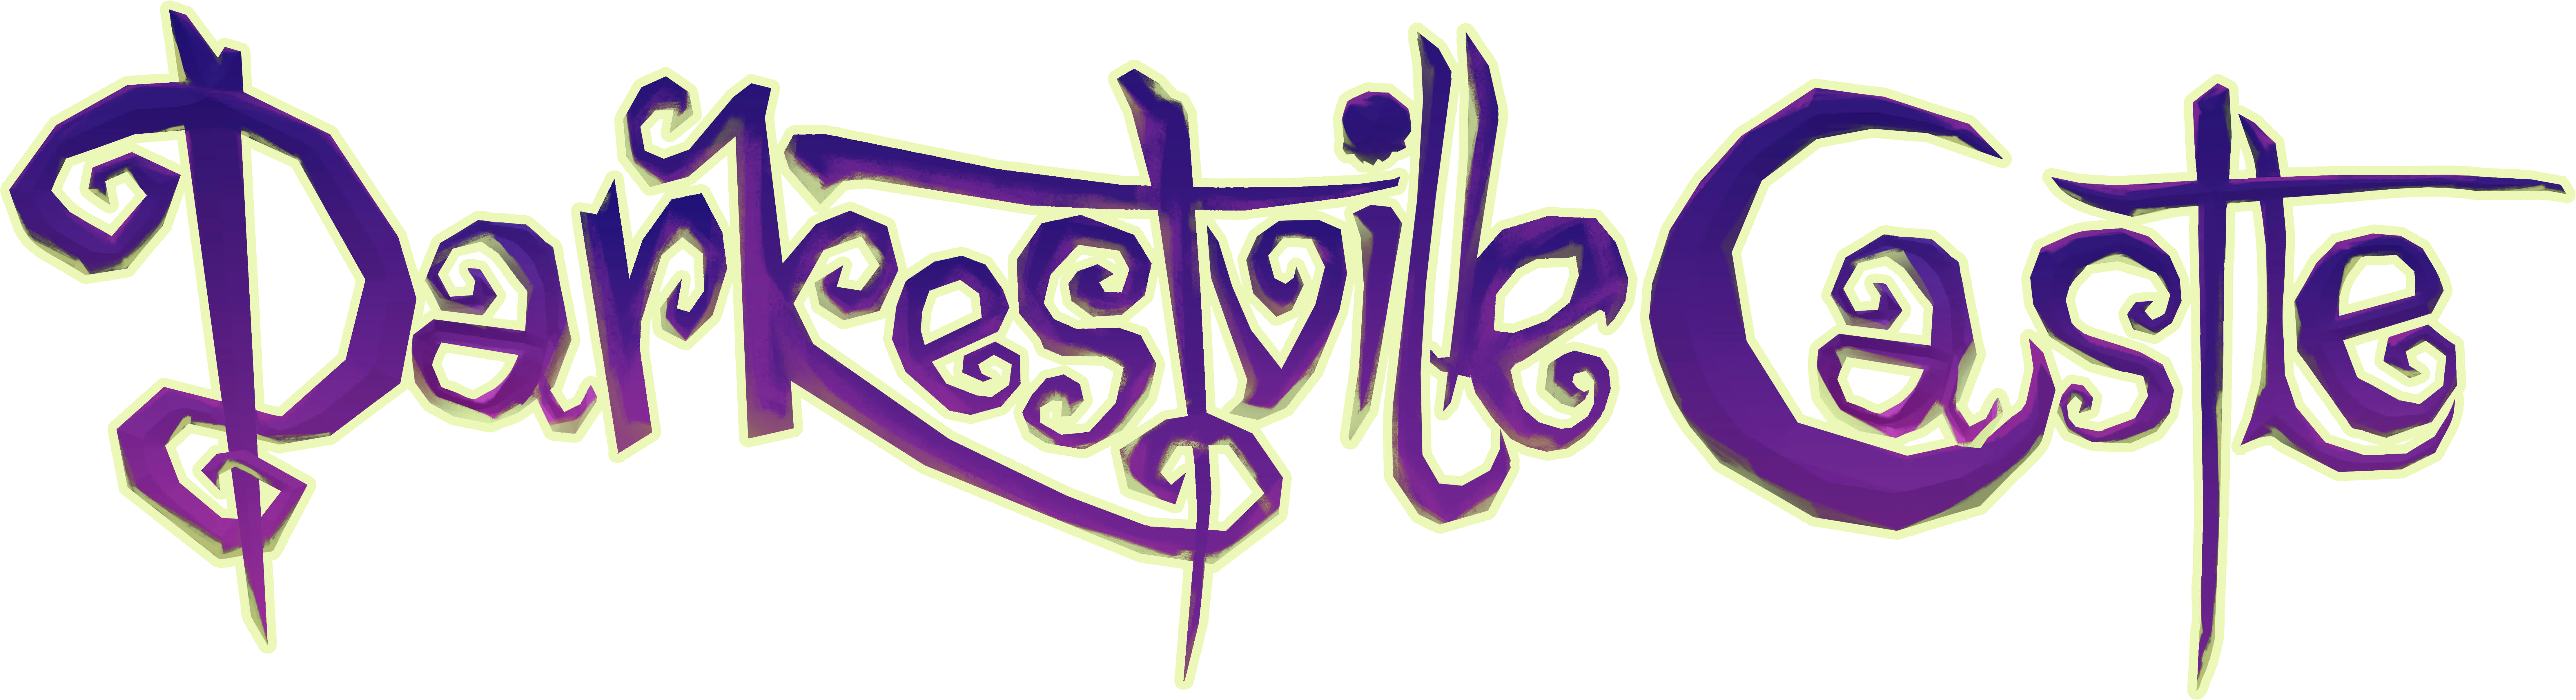 Darkestville Castle Official Logo - Darkestville Castle Logo Png (8884x2414), Png Download